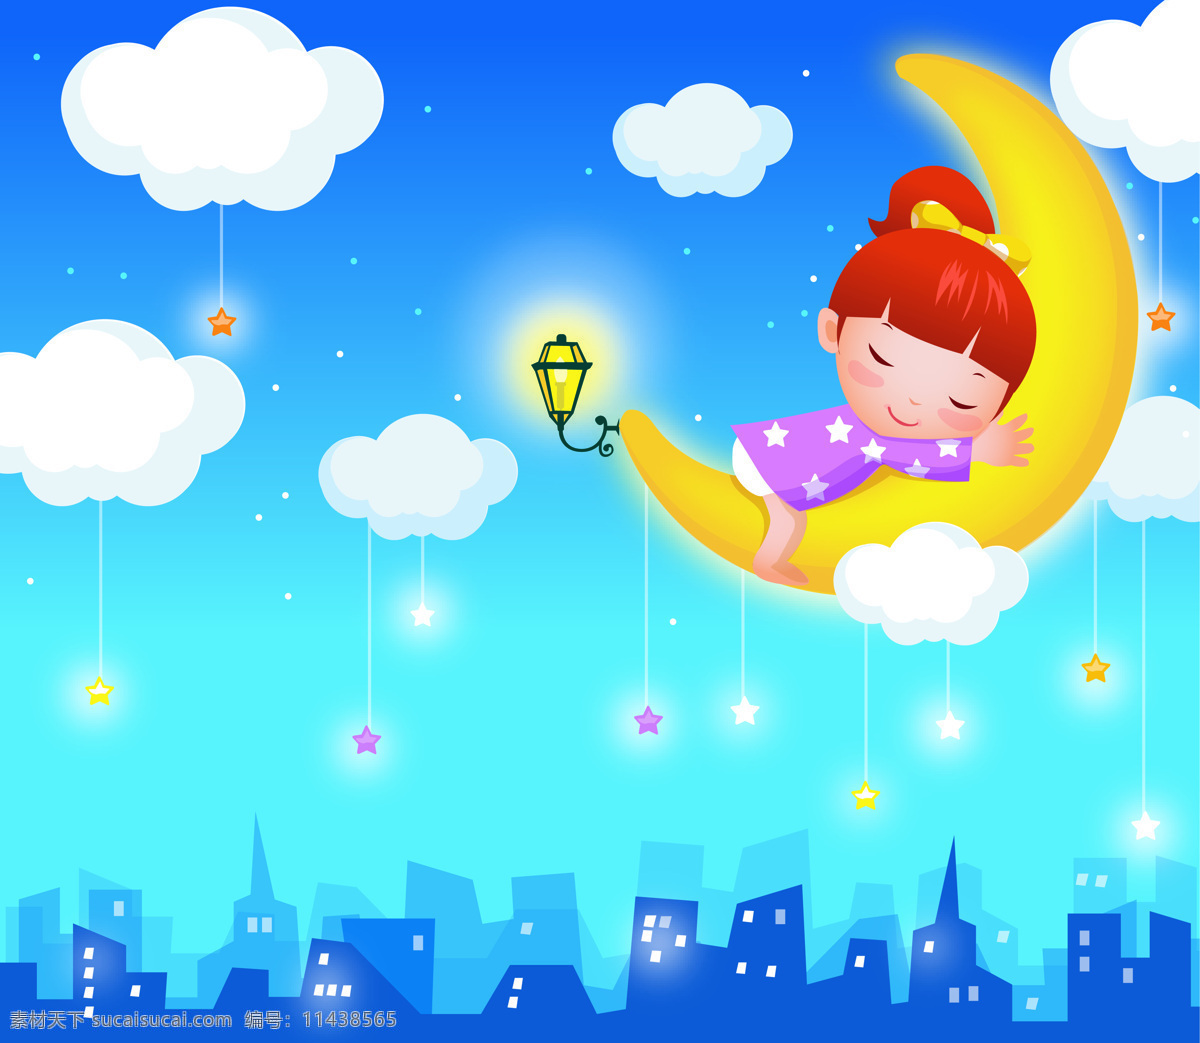 童话睡美人 童话 白云 睡美人 月亮 星星 儿童房装修画 动漫人物 动漫动画